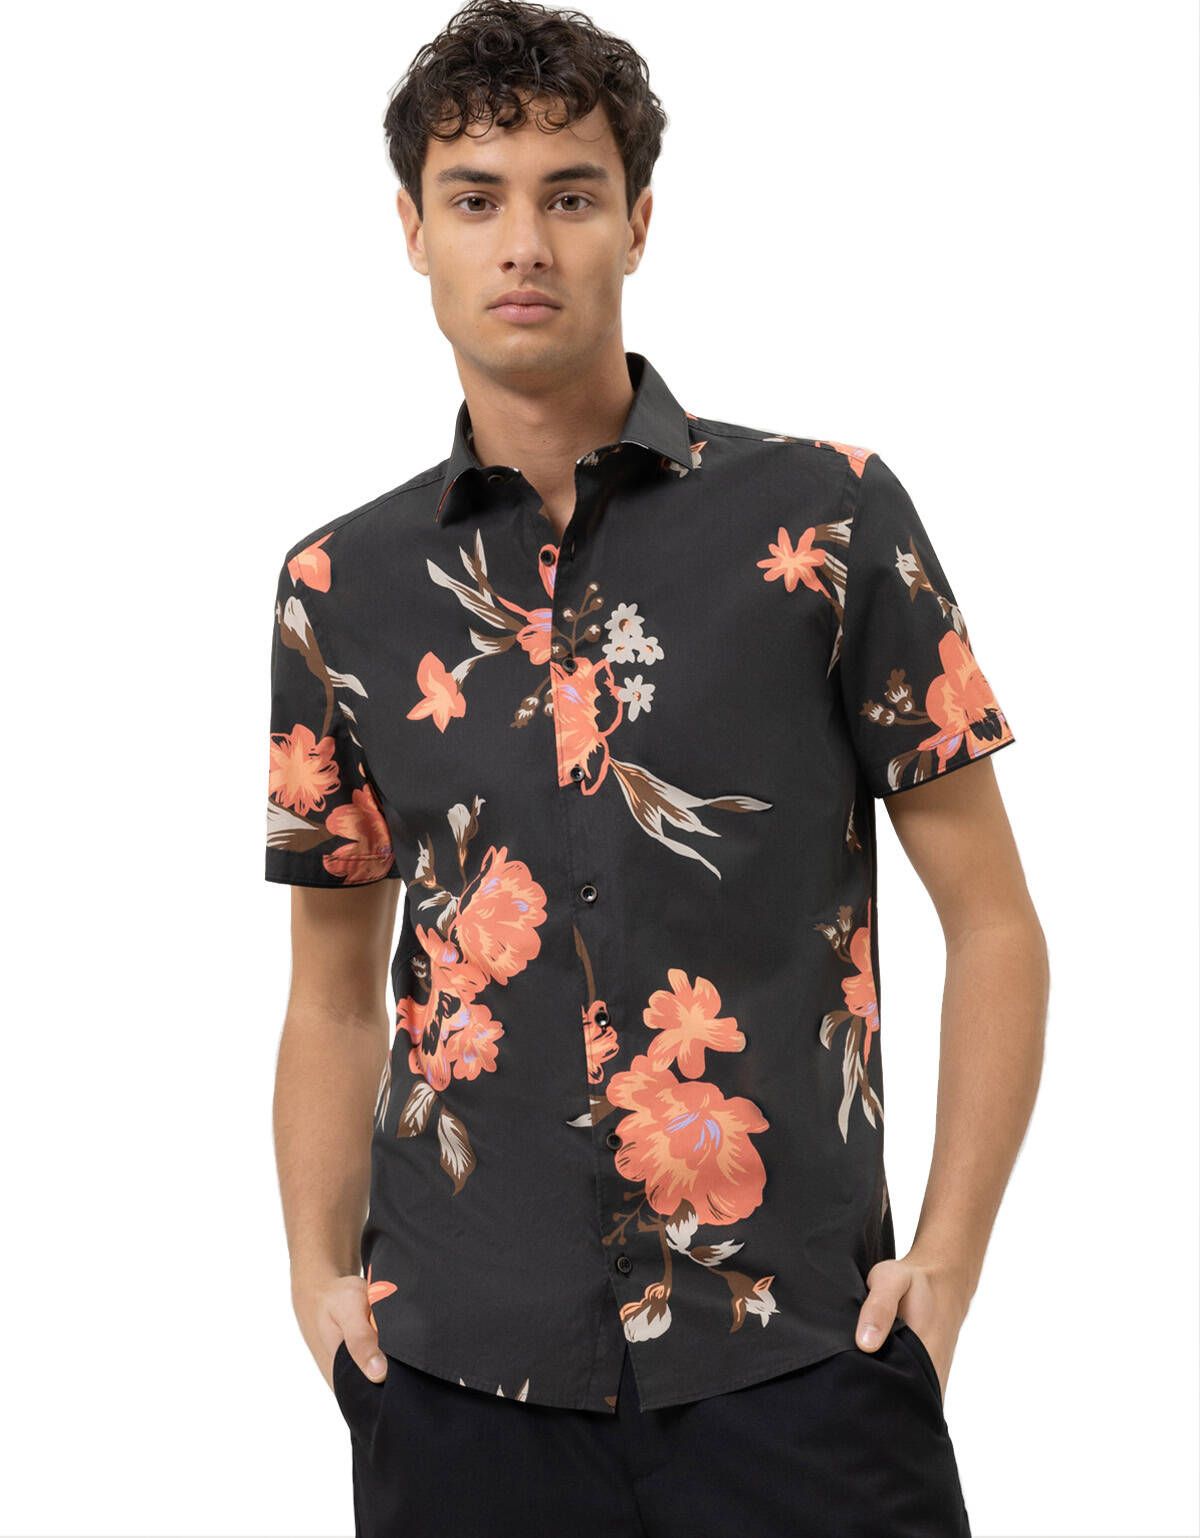 Рубашка мужская  OLYMP цветочный принт, body fit